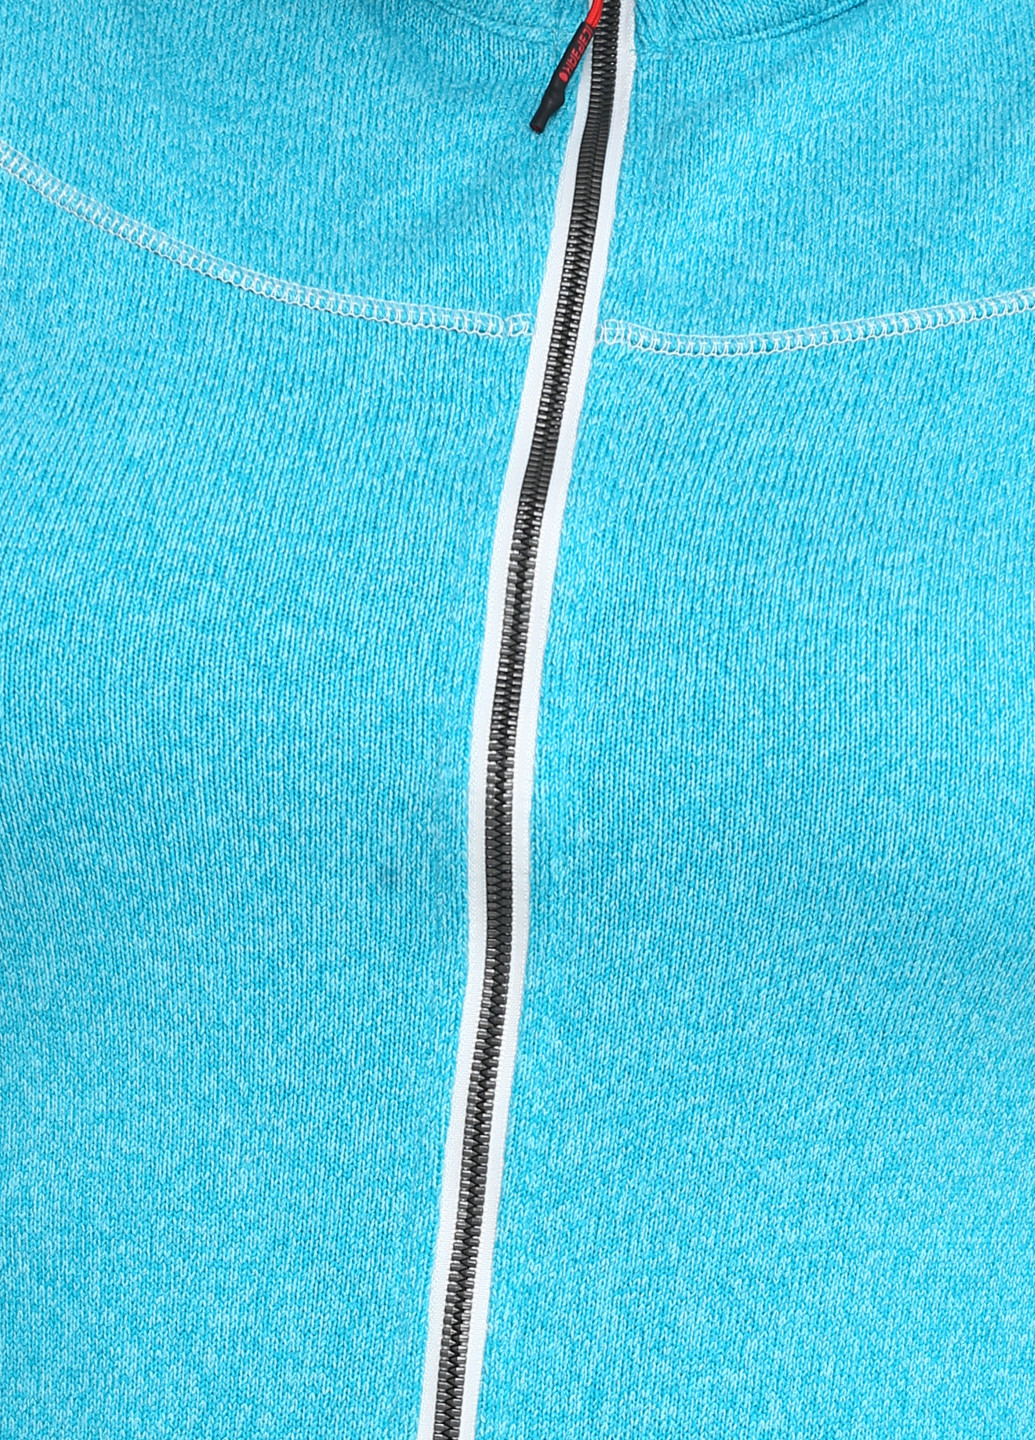 Кофта Icepeak с длинным рукавом меланж голубая спортивная